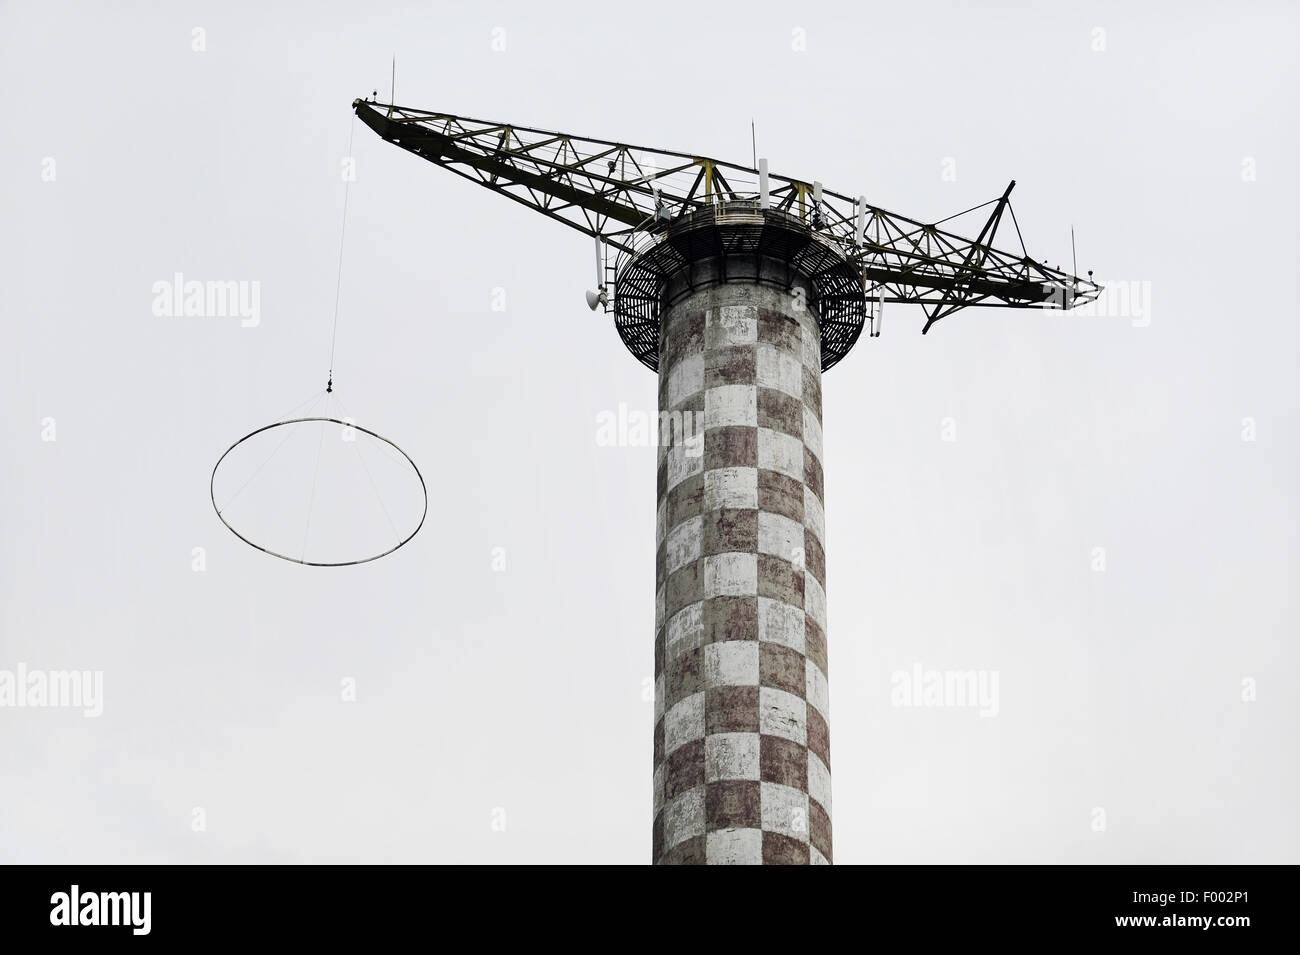 Sicht der Industrie mit einem verlassenen Fallschirm Sprung Turm Stockfoto